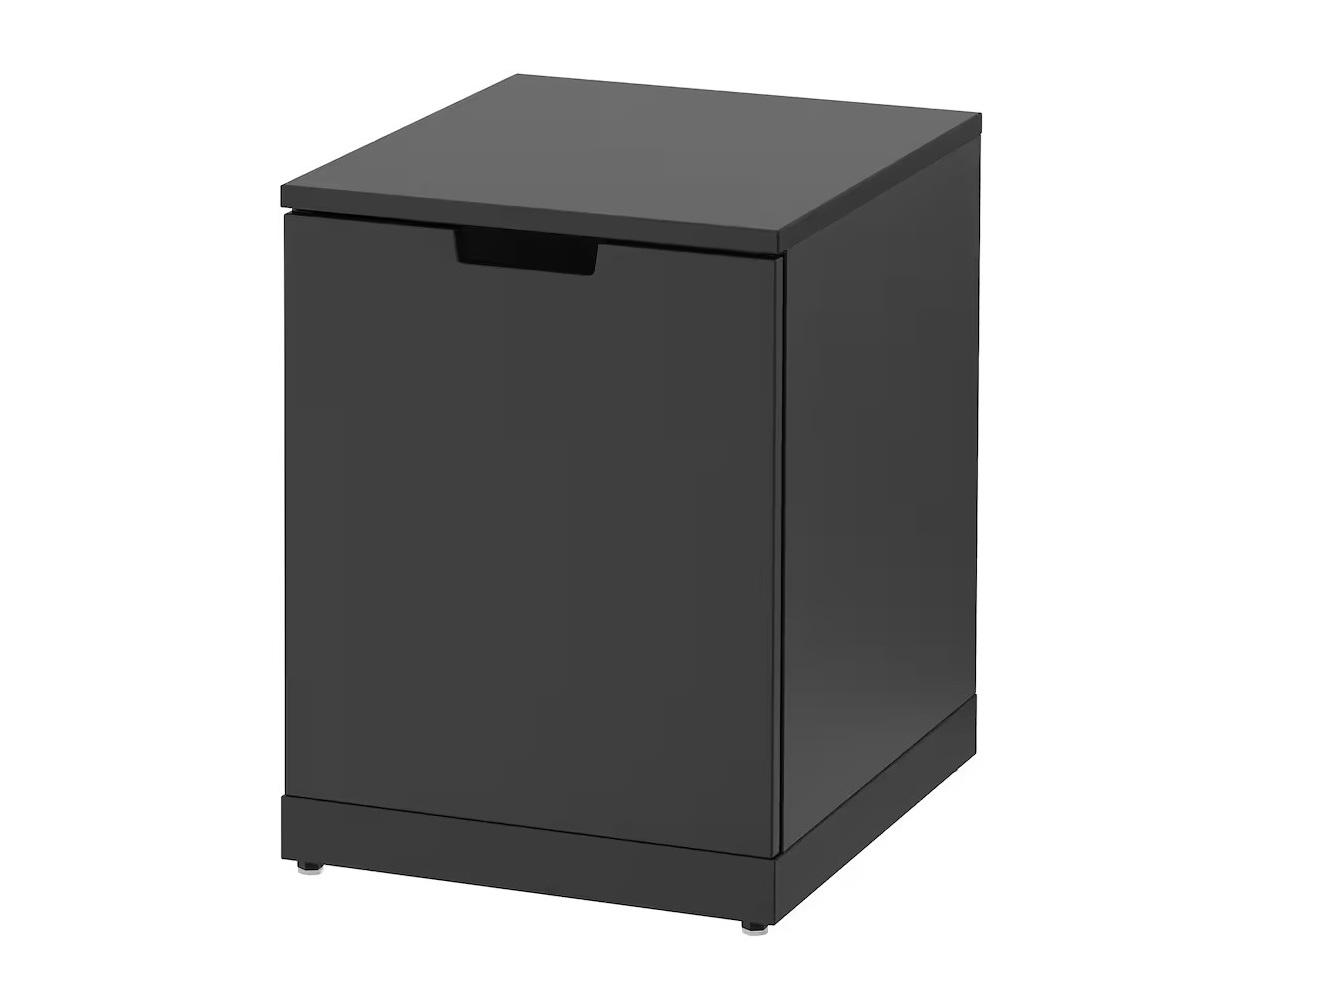 Комод Нордли 44 black ИКЕА (IKEA) изображение товара